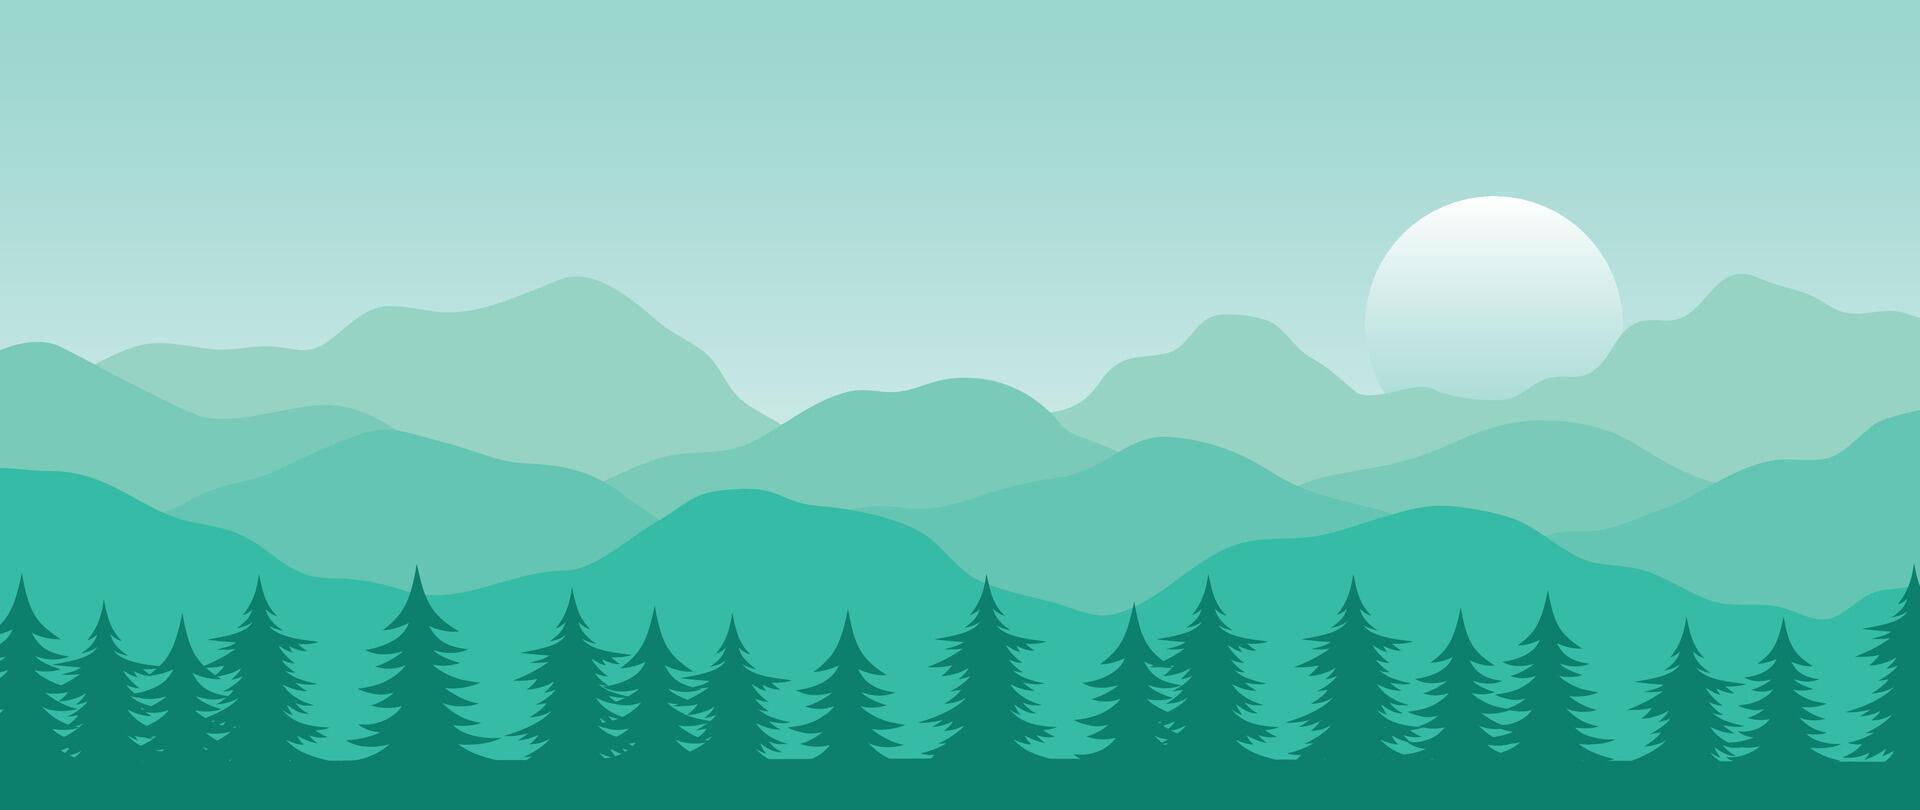 berg minimaal achtergrond . abstract landschap heuvels met groen kleur, pijnboom boom, zon, maan. natuur visie illustratie ontwerp voor huis decor, behang, afdrukken, banier, interieur decor. vector